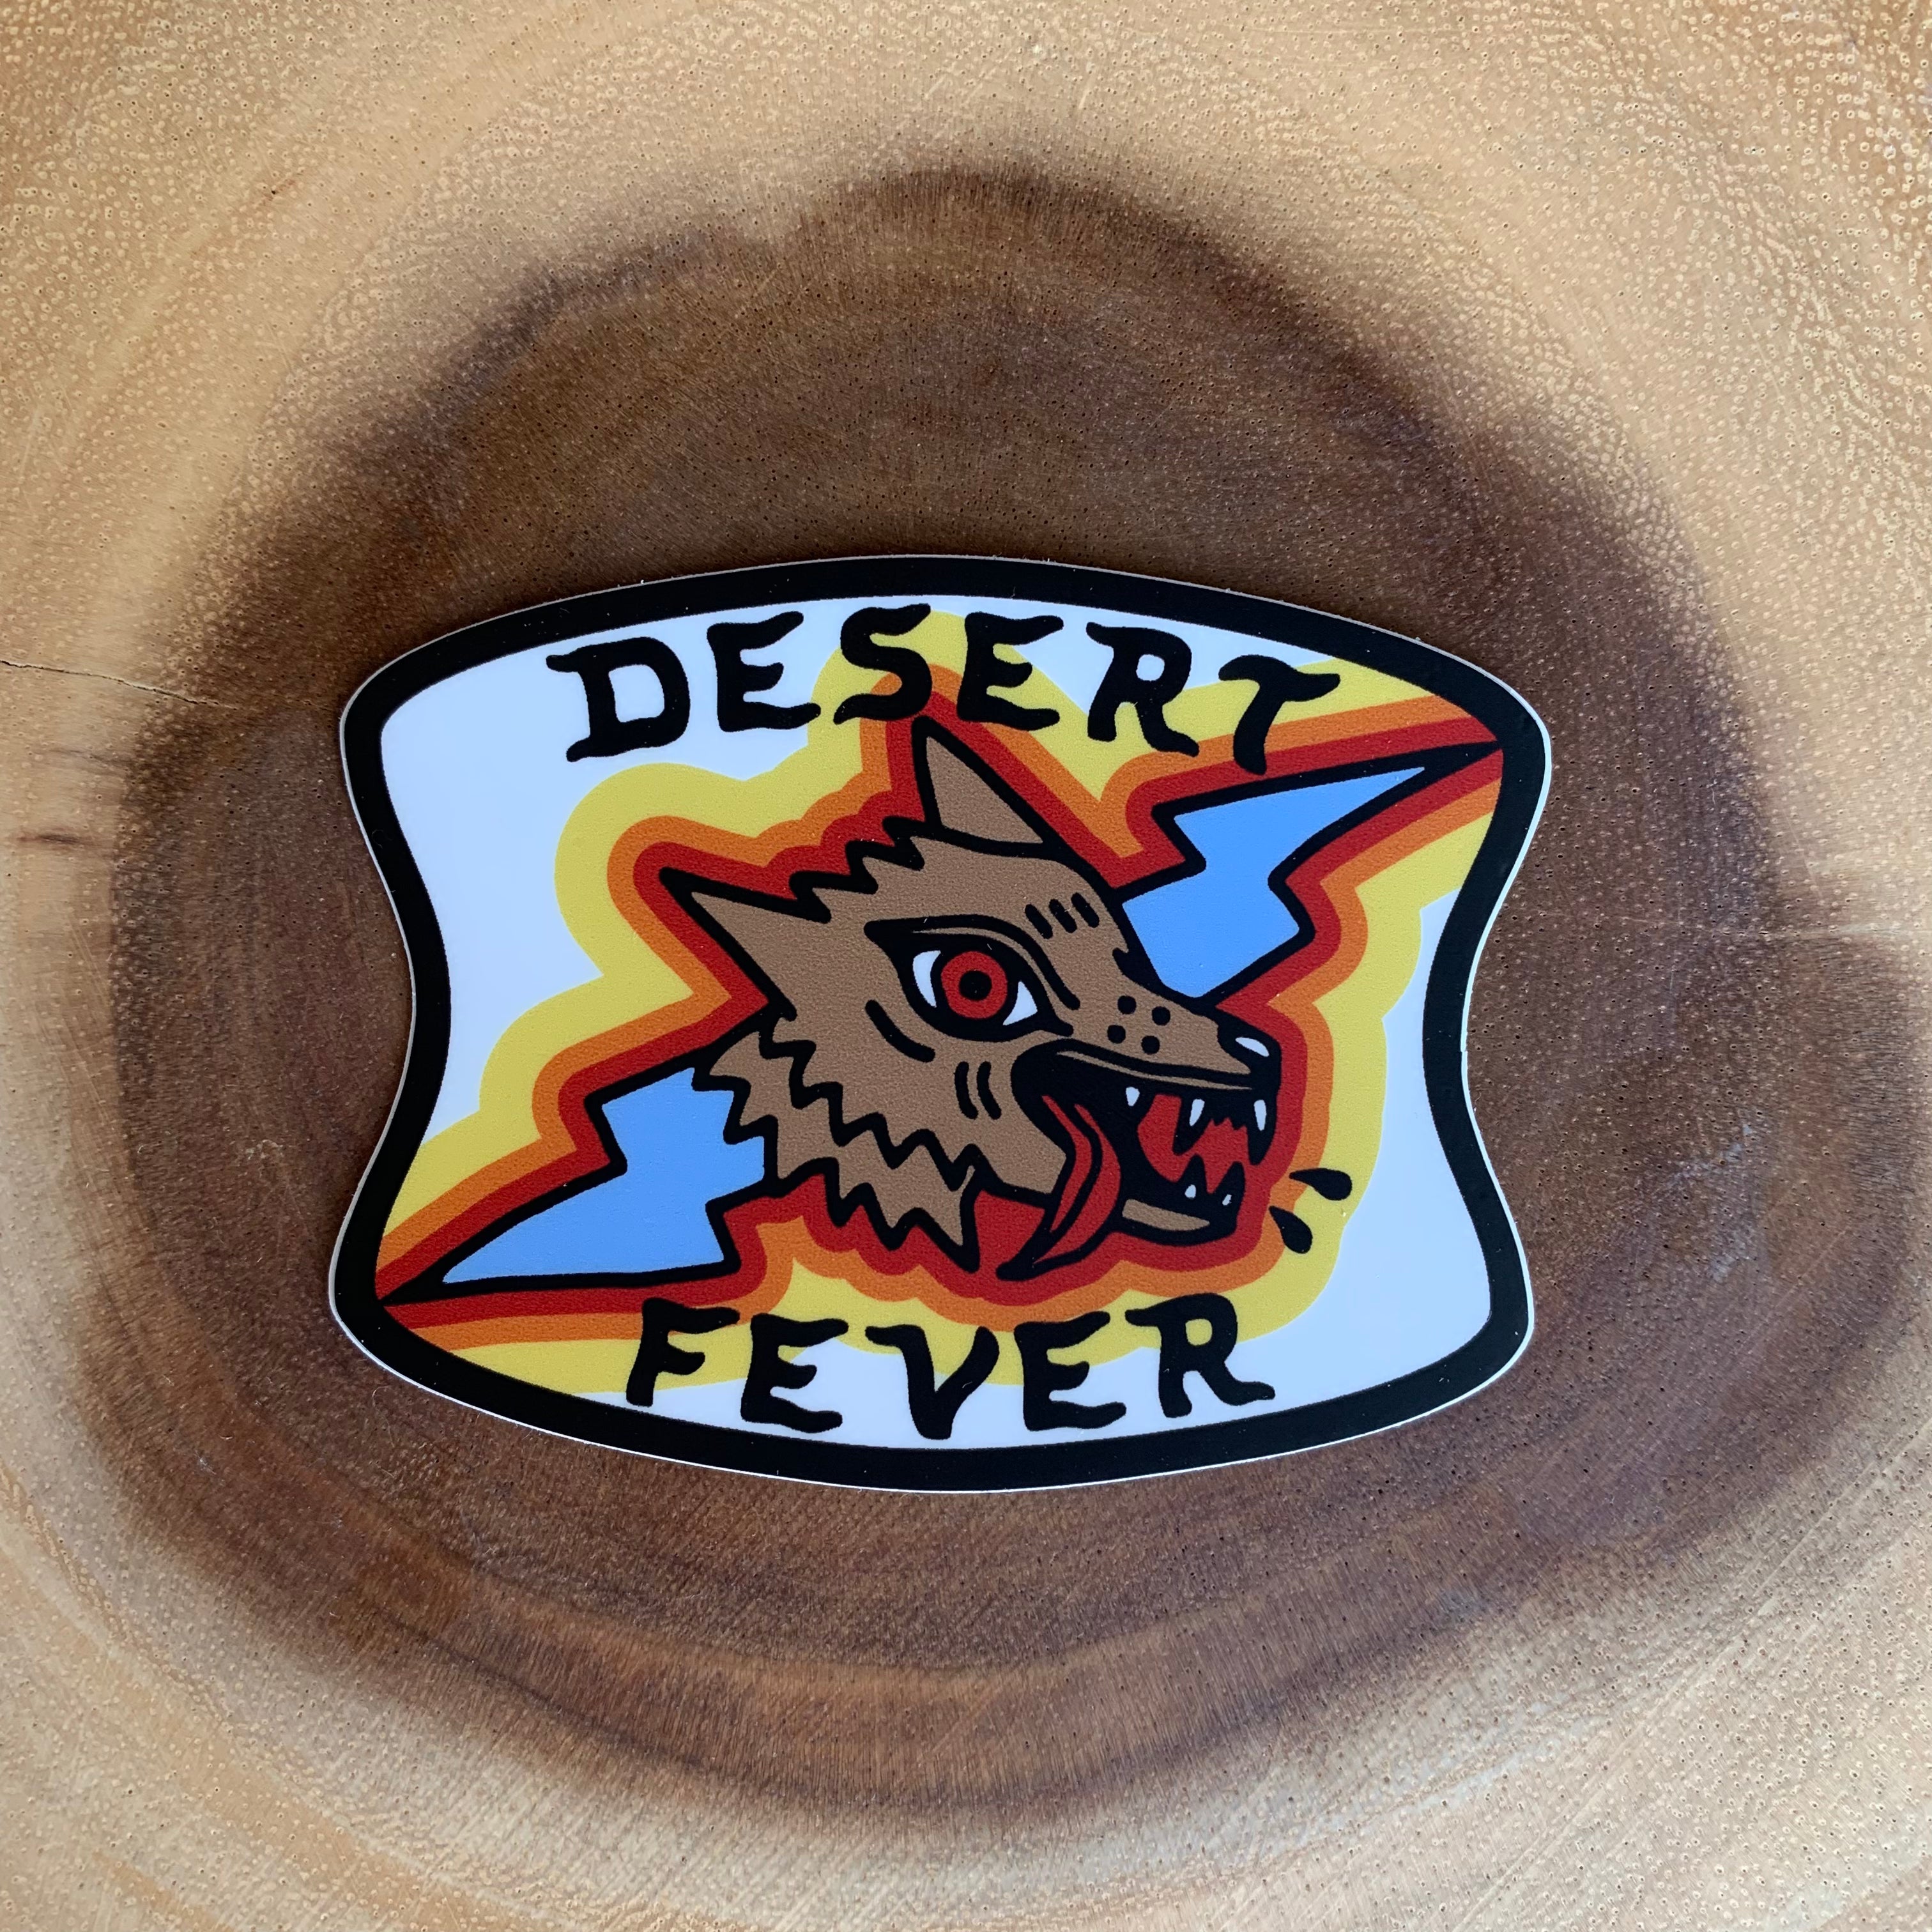 Desert Fever Sticker